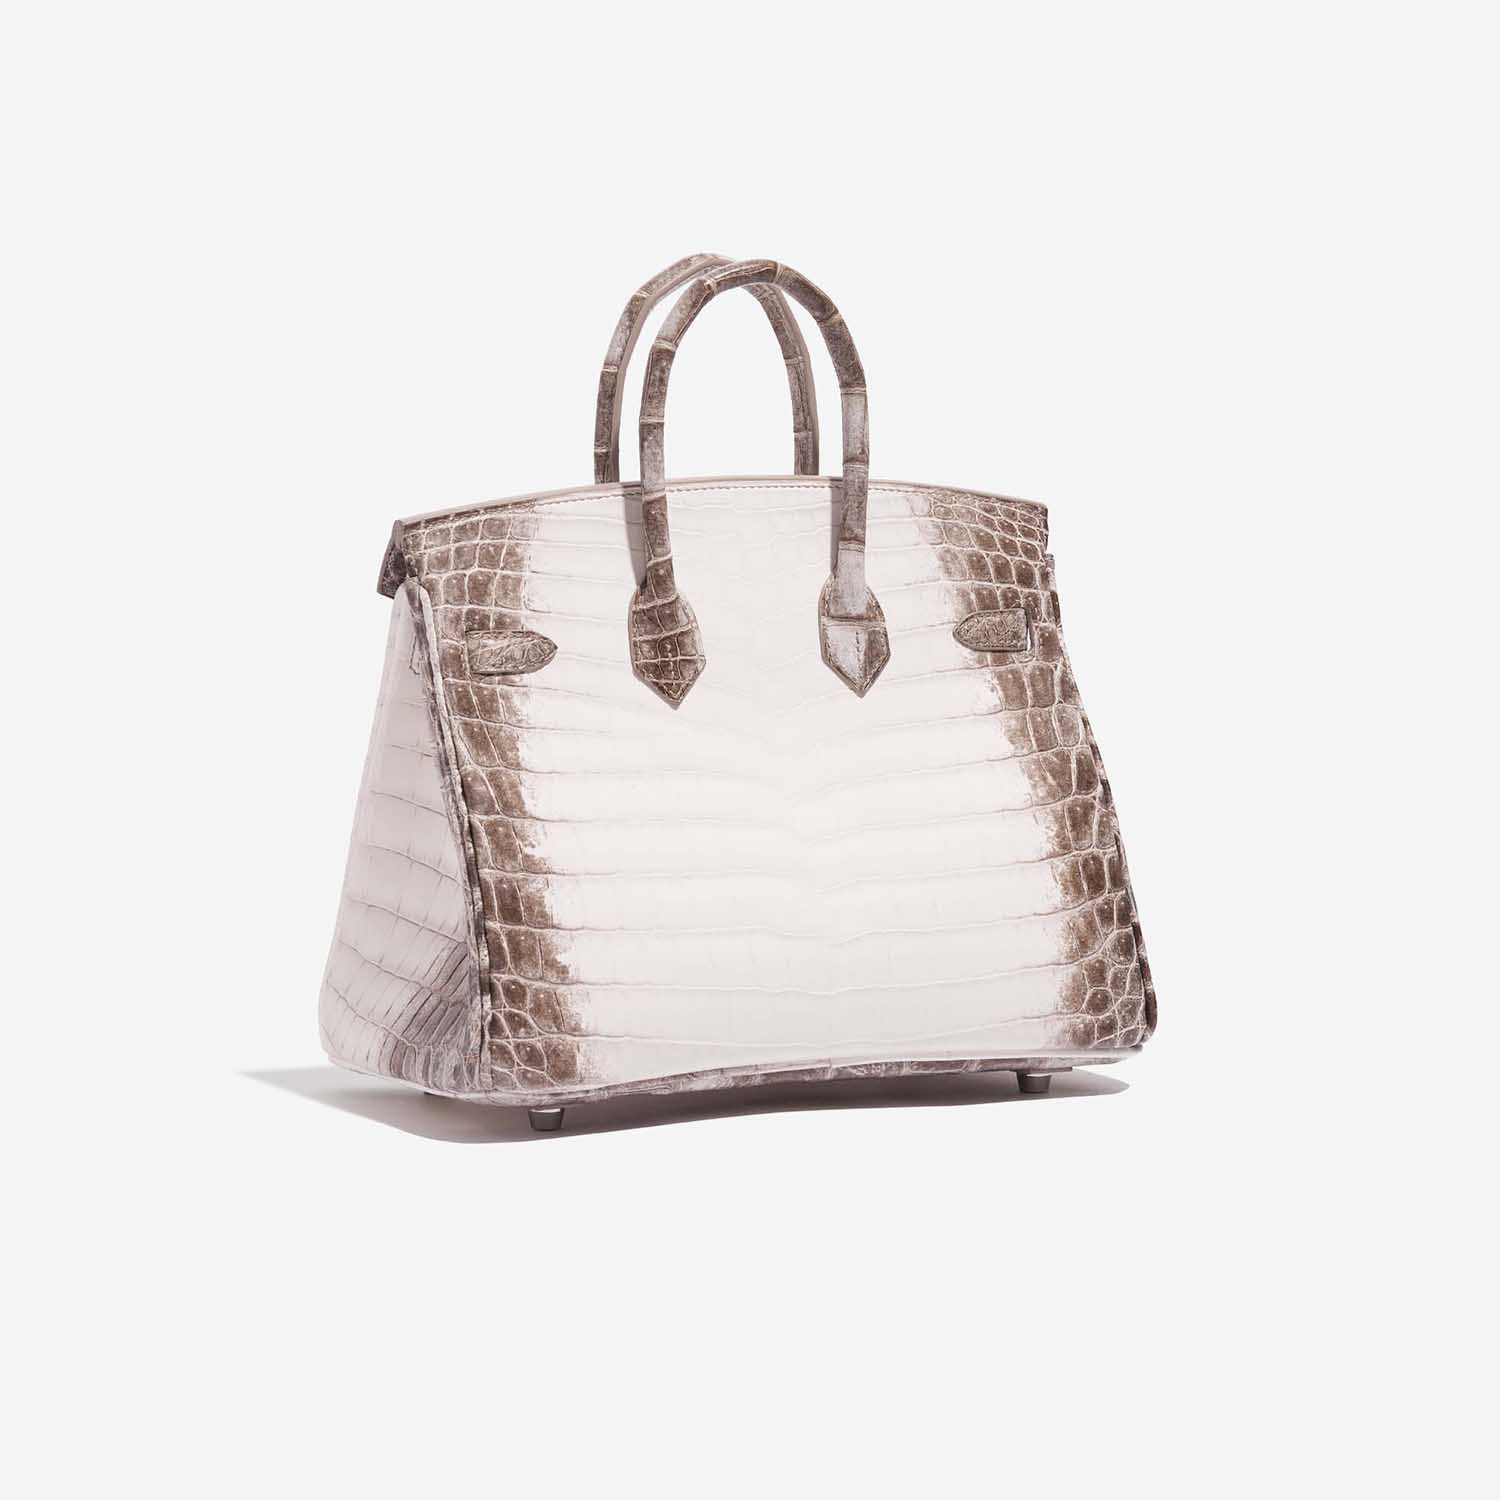 Pre-owned Hermès Tasche Birkin 25 Niloticus Crocodile Himalaya Blanc Brown, White Side Back | Verkaufen Sie Ihre Designer-Tasche auf Saclab.com